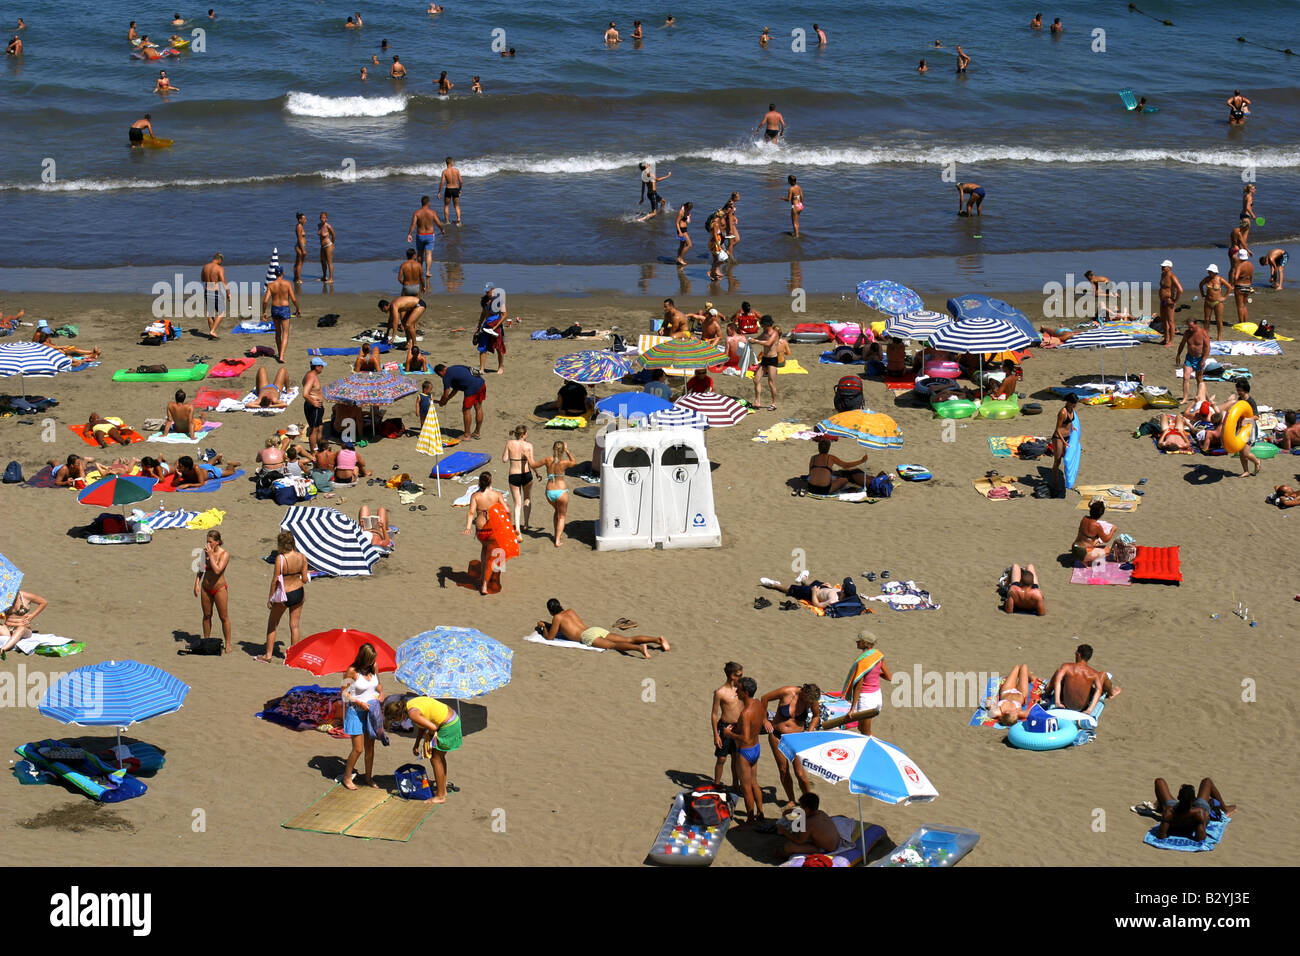 Regenschirm und Sonnenschutz, Strand von Playa del Ingles in Gran Canaria,  Kanarische Inseln, Spanien-Foto: Pixstory / Alamy Stockfotografie - Alamy